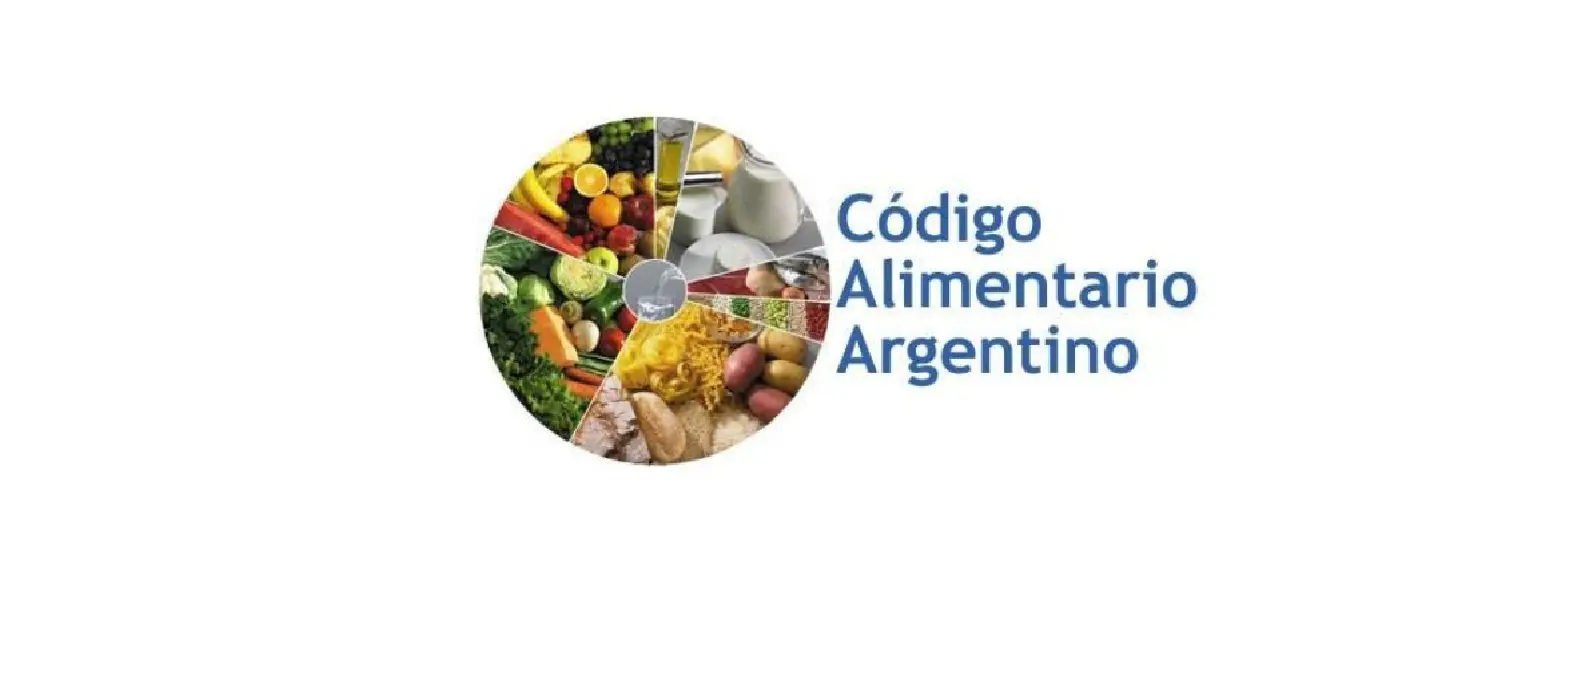 fiscalizacion de alimentos en argentina - Quién se encarga de supervisar los alimentos